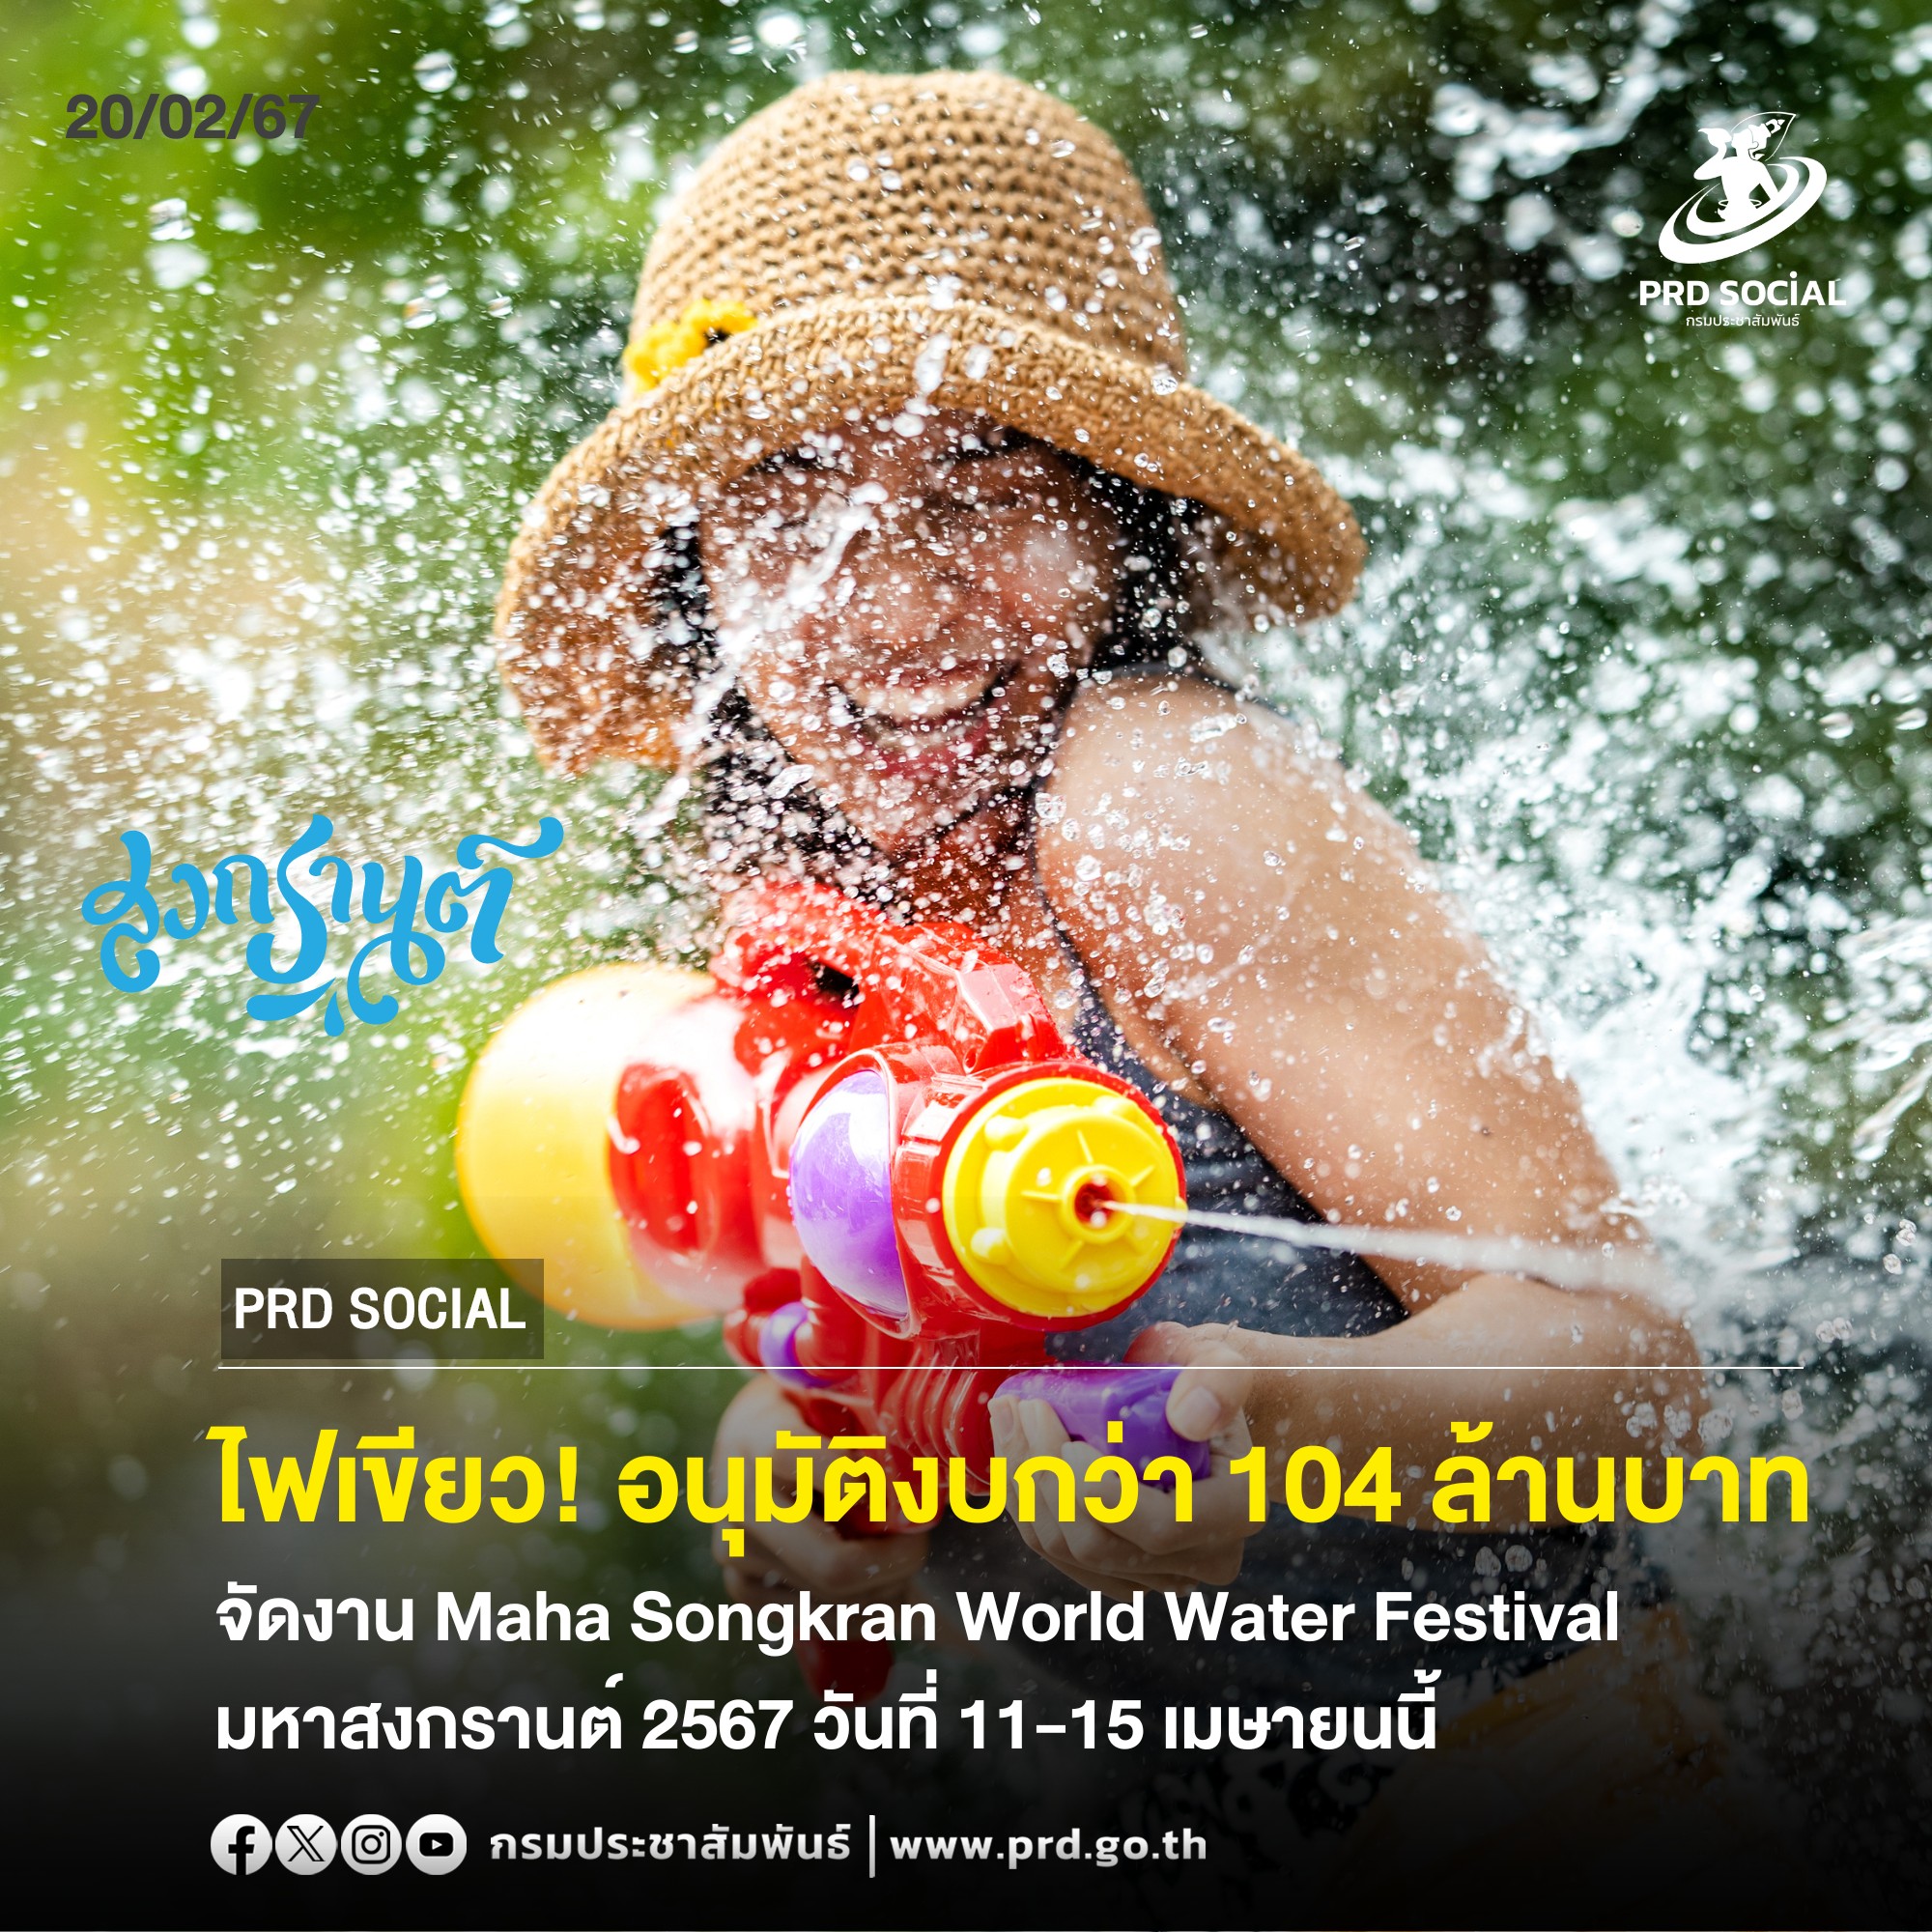 ครม. ไฟเขียวอนุมัติงบกว่า 104 ล้านบาท จัดงาน Maha Songkran World Water Festival เย็นทั่วหล้า มหาสงกรานต์ 2567 วันที่ 11-15 เมษายนนี้